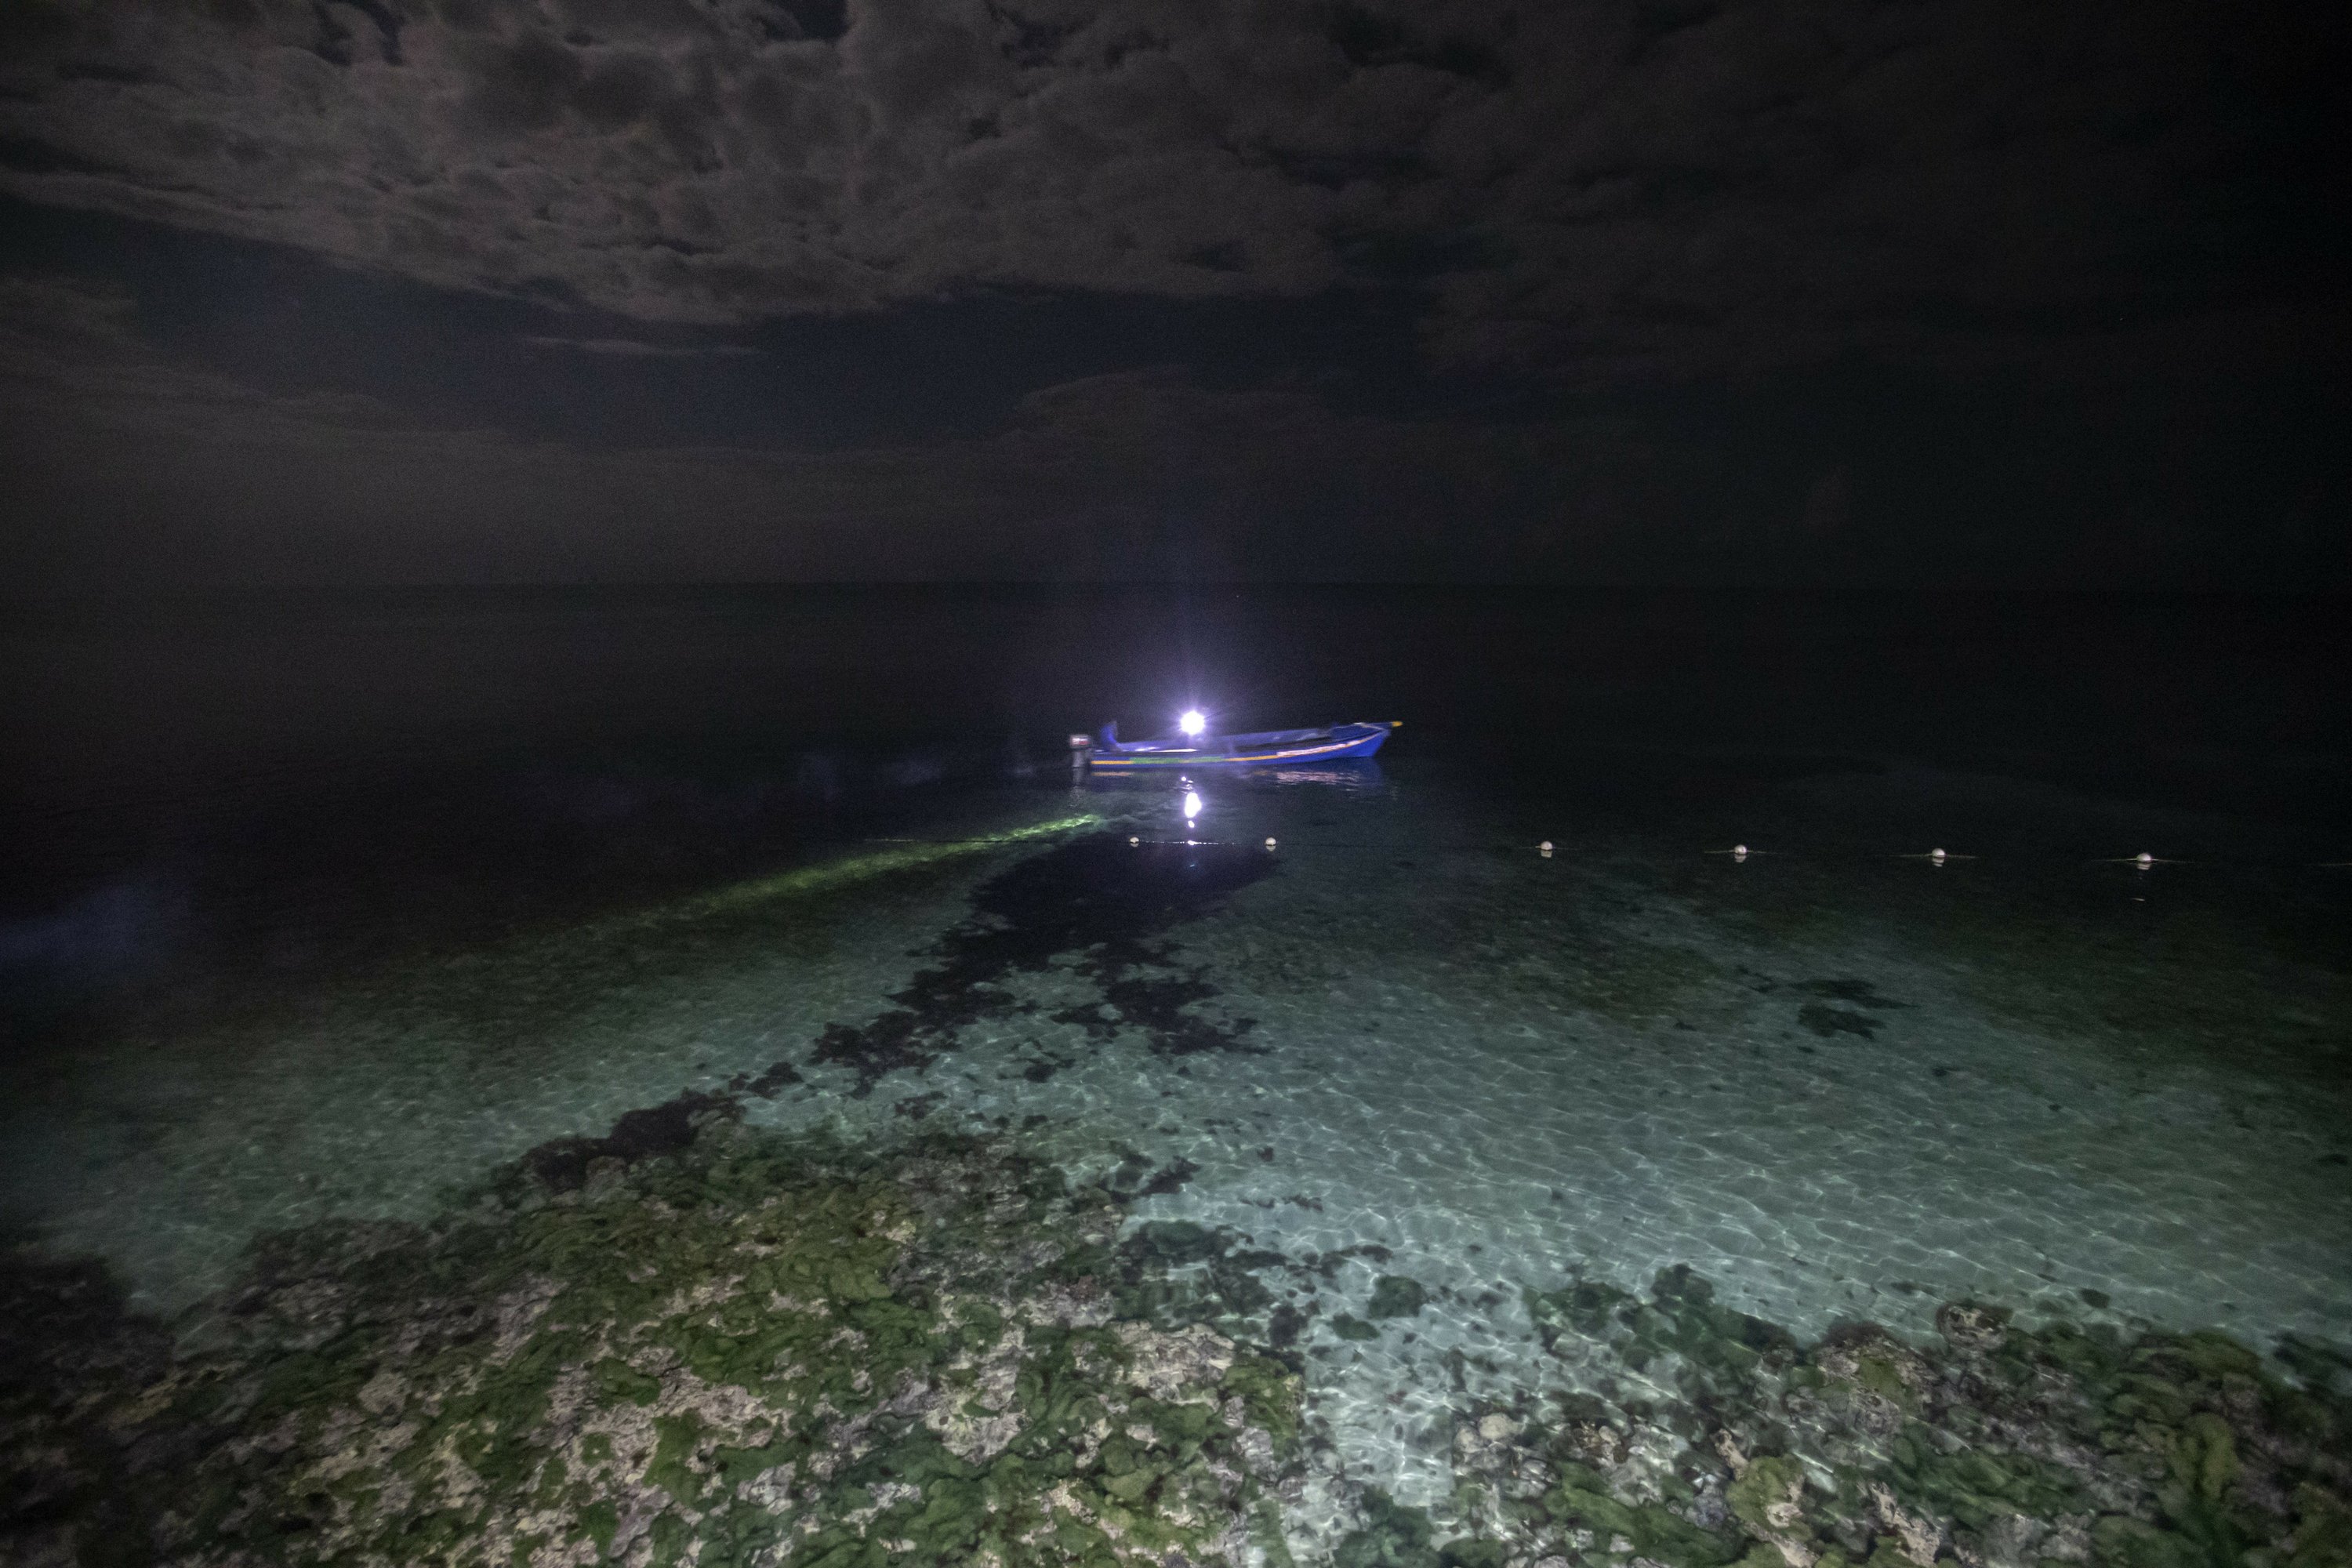 AP Photos: Night fishing in moonlit sea in eerie silence